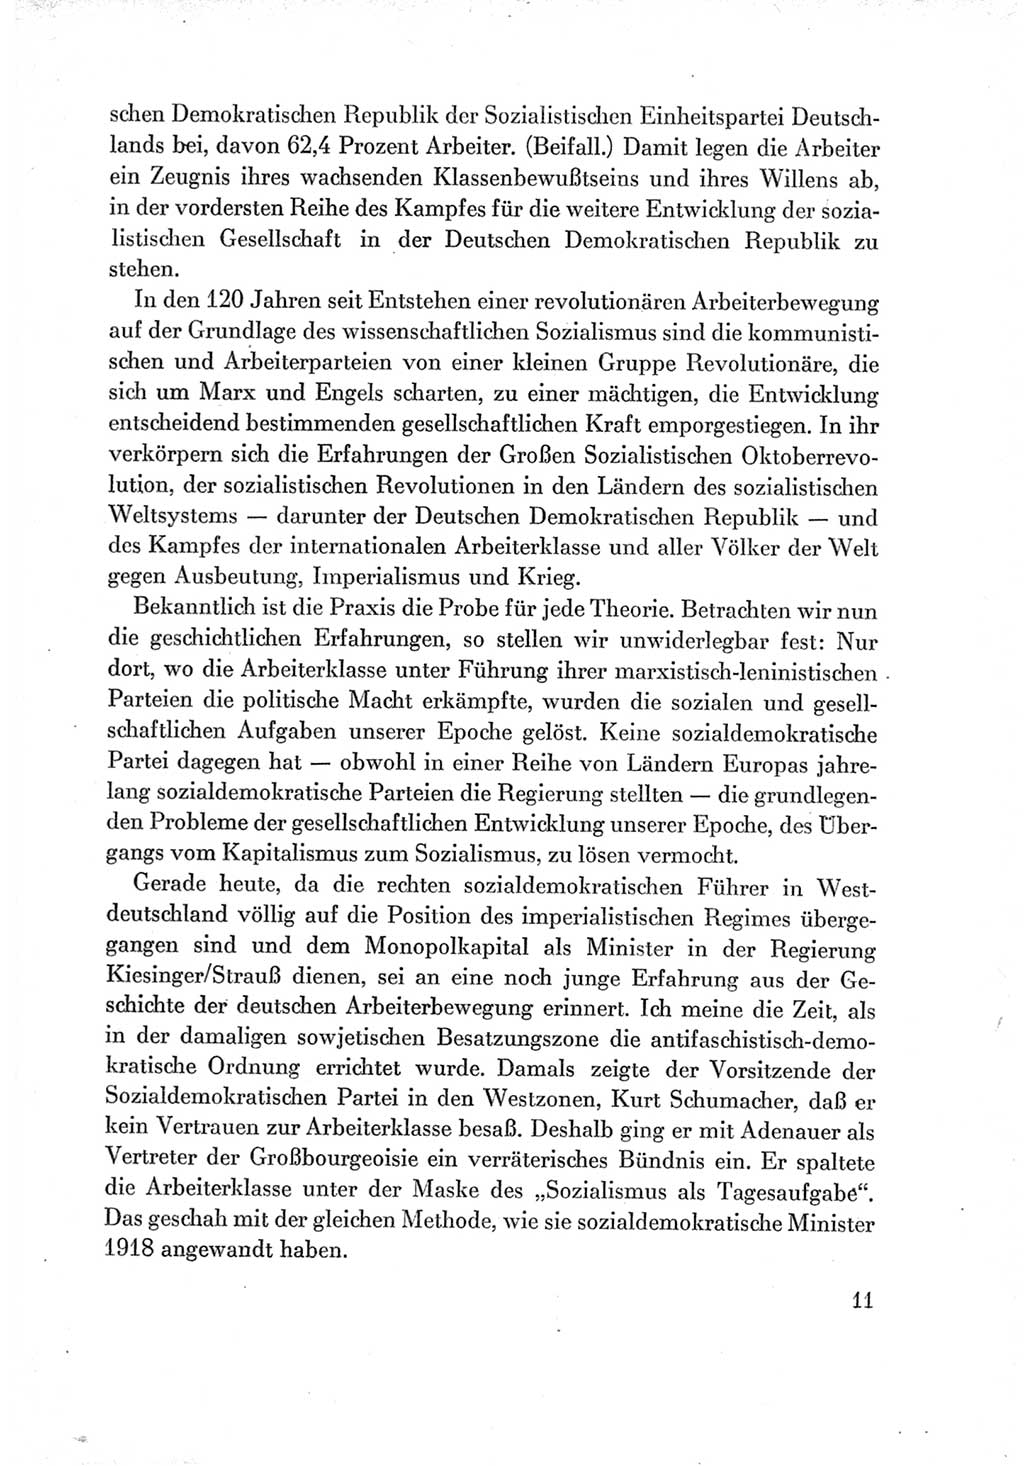 Protokoll der Verhandlungen des Ⅶ. Parteitages der Sozialistischen Einheitspartei Deutschlands (SED) [Deutsche Demokratische Republik (DDR)] 1967, Band Ⅱ, Seite 11 (Prot. Verh. Ⅶ. PT SED DDR 1967, Bd. Ⅱ, S. 11)